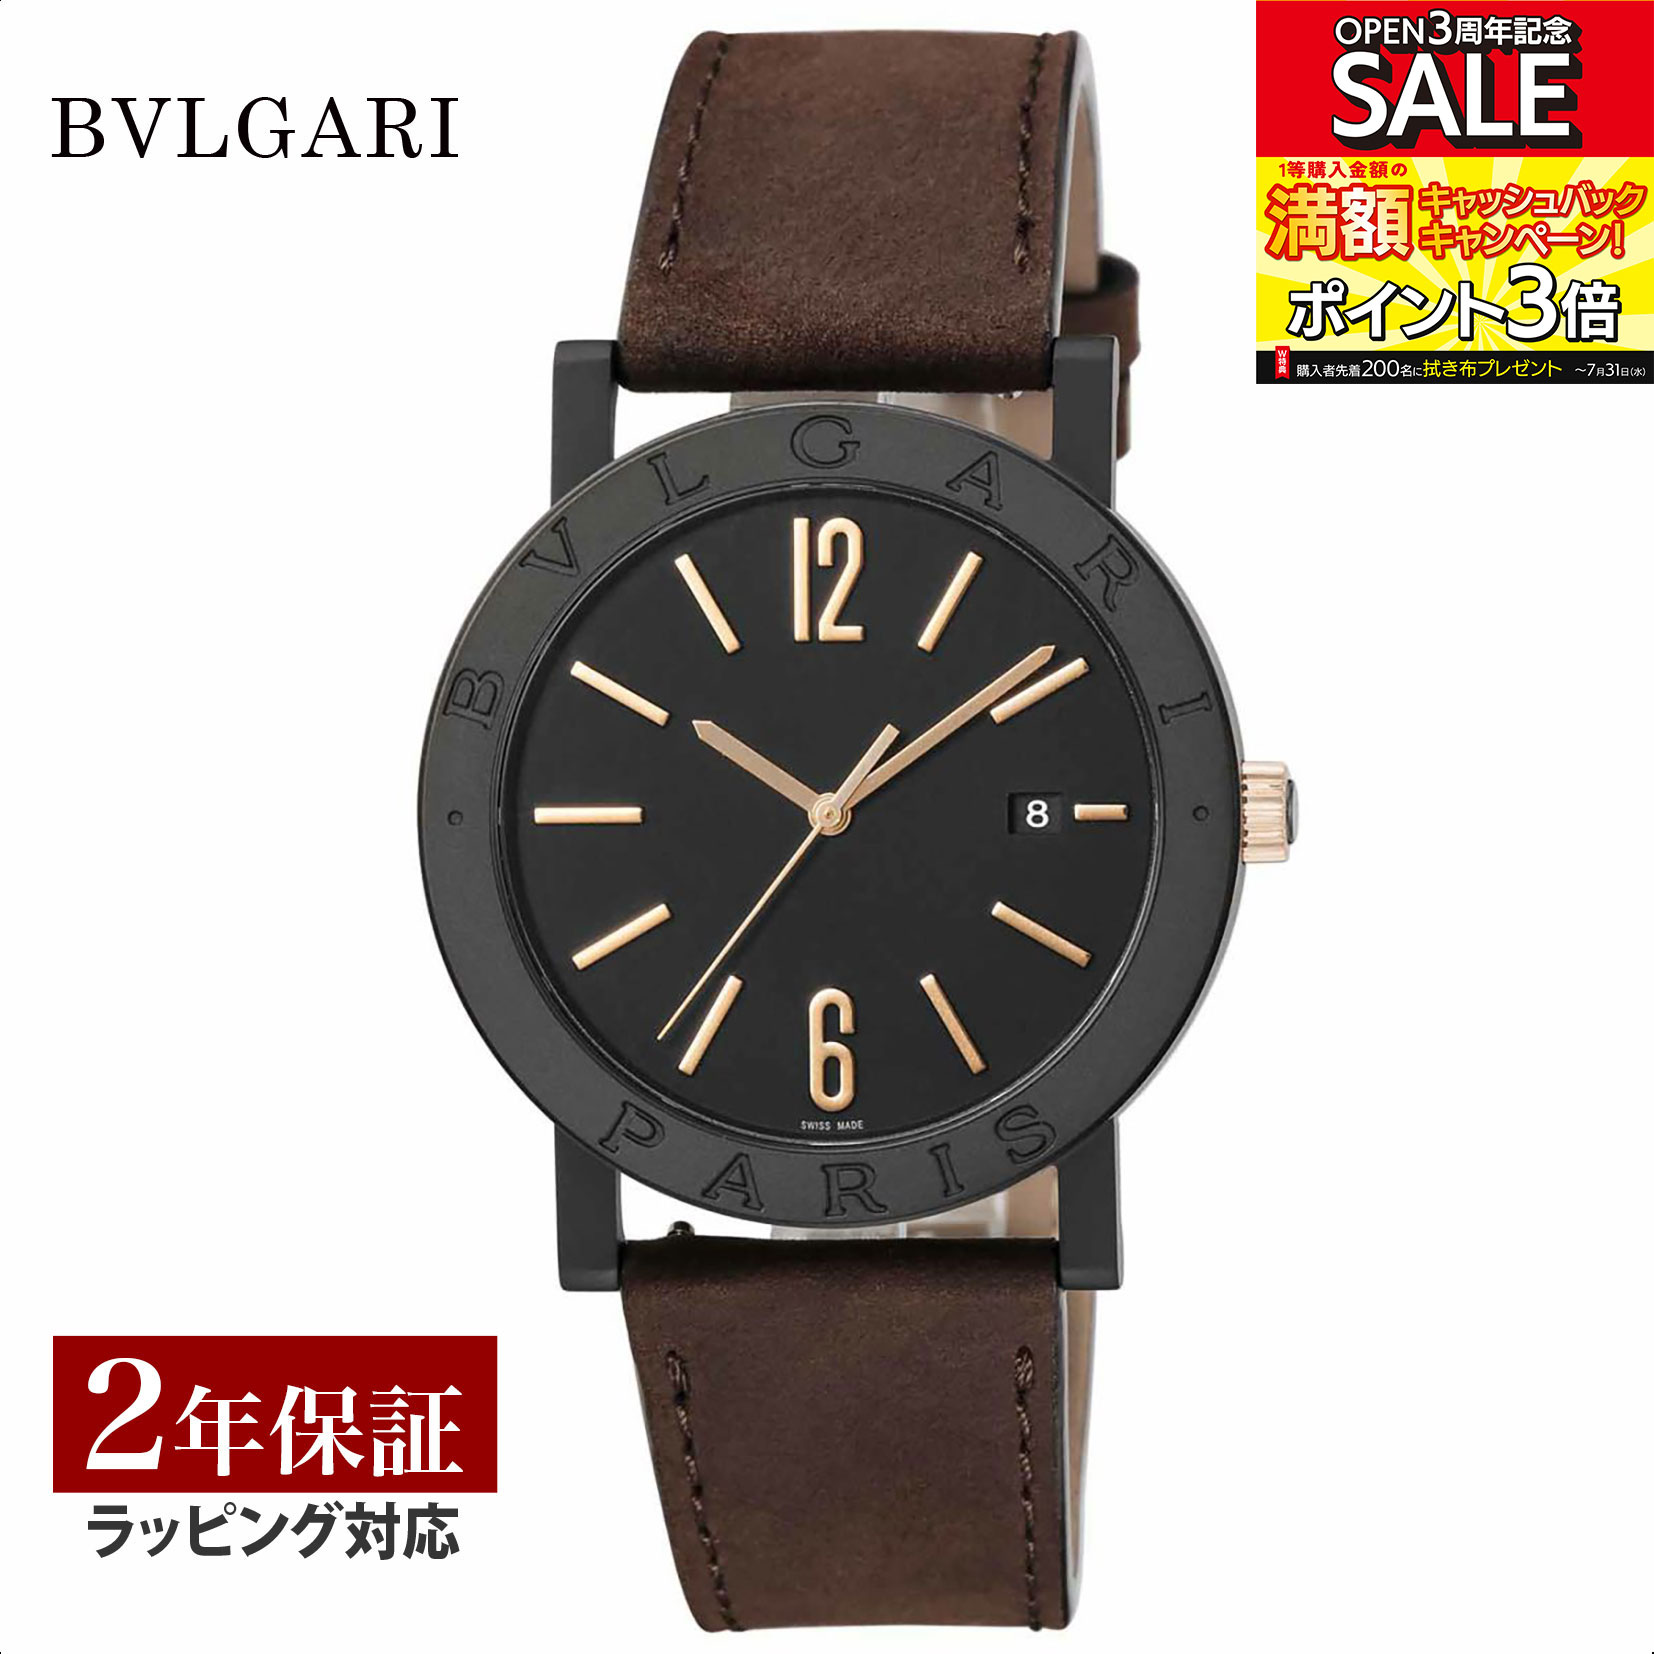 ブルガリブルガリ 腕時計（メンズ） 【当店限定】 ブルガリ BVLGARI メンズ 時計 Bvlgari Bvlgari ブルガリブルガリ 自動巻 ブラック BB41BTDLCCL/PARIS 時計 腕時計 高級腕時計 ブランド